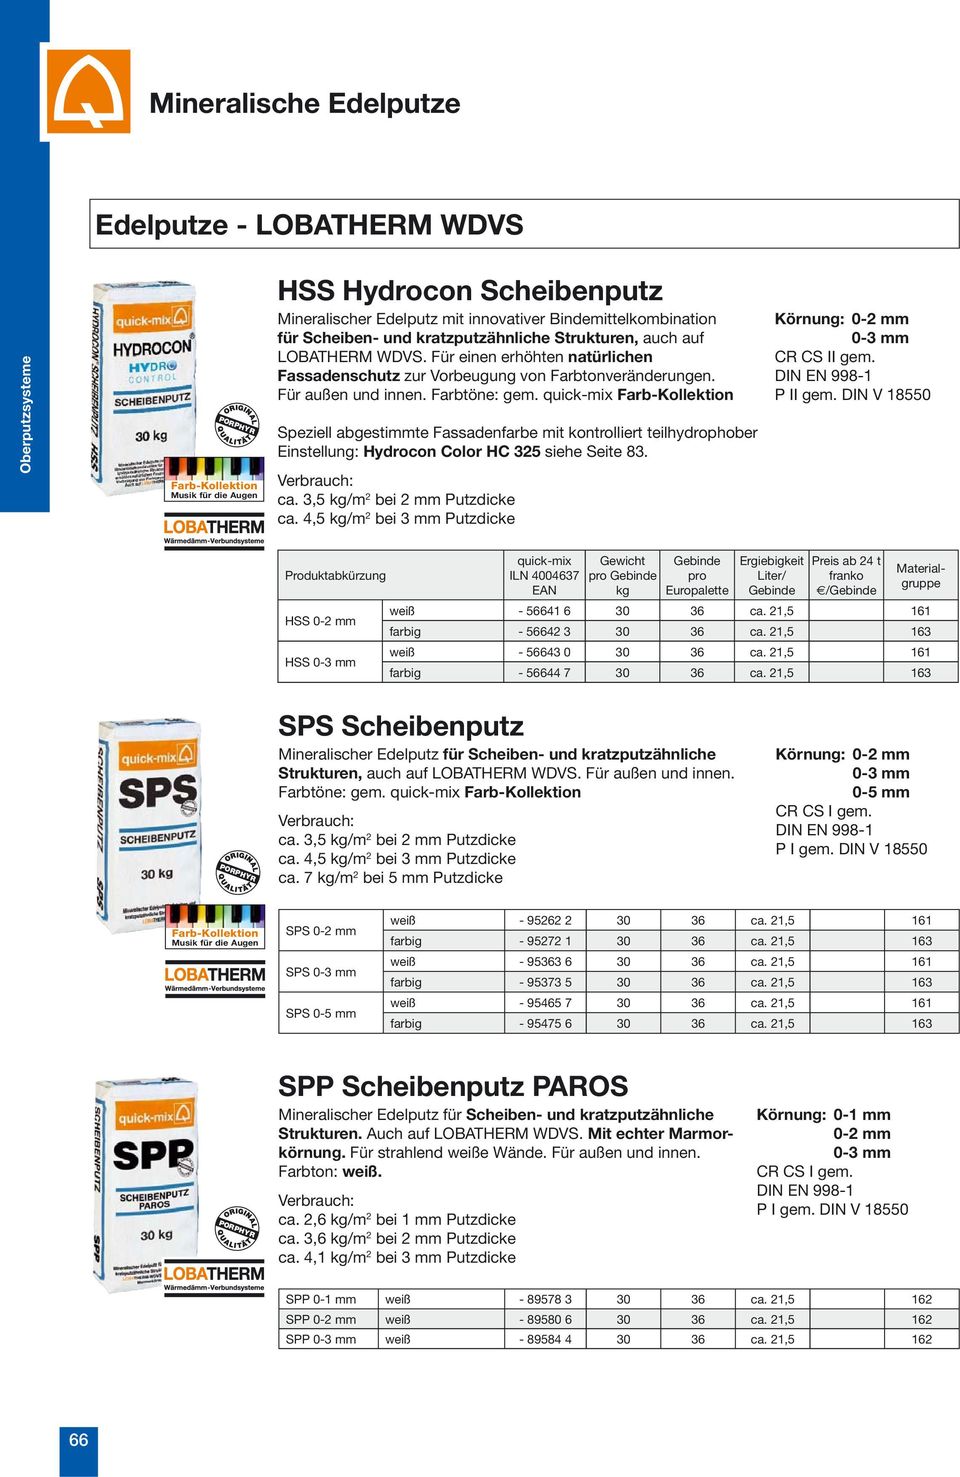 Speziell abgestimmte Fassadenfarbe mit kontrolliert teilhydrophober Einstellung: Hydrocon Color HC 325 siehe Seite 83. Verbrauch: ca. 3,5 /m 2 bei 2 mm Putzdicke ca.